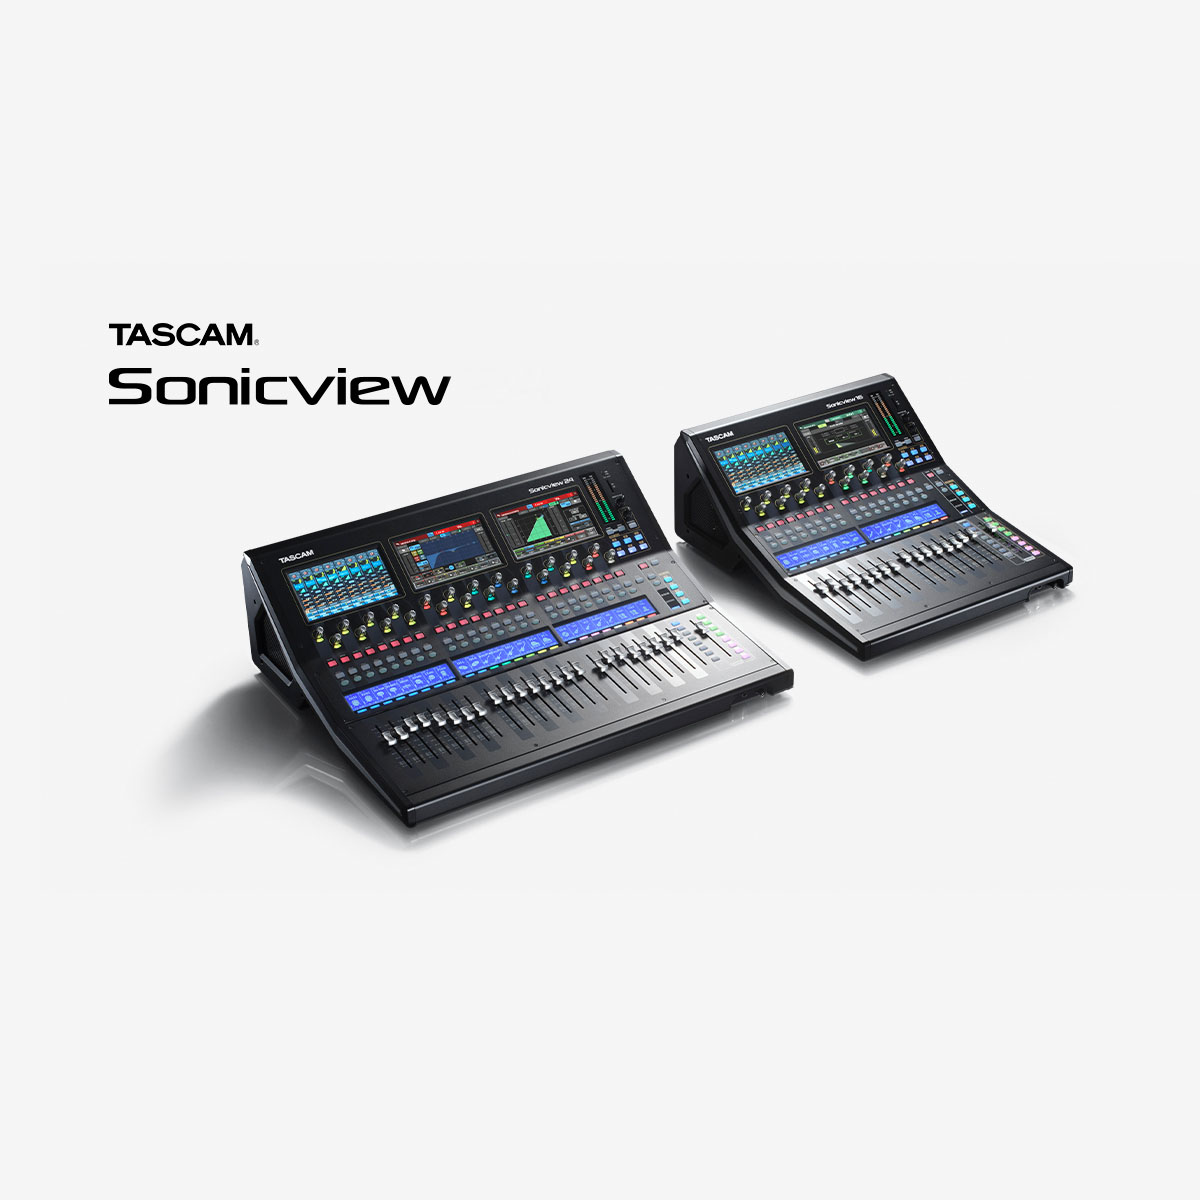 Serie TASCAM Sonicview XP - Lanzado nuevo firmware V1.5.2 y software V1.5.1